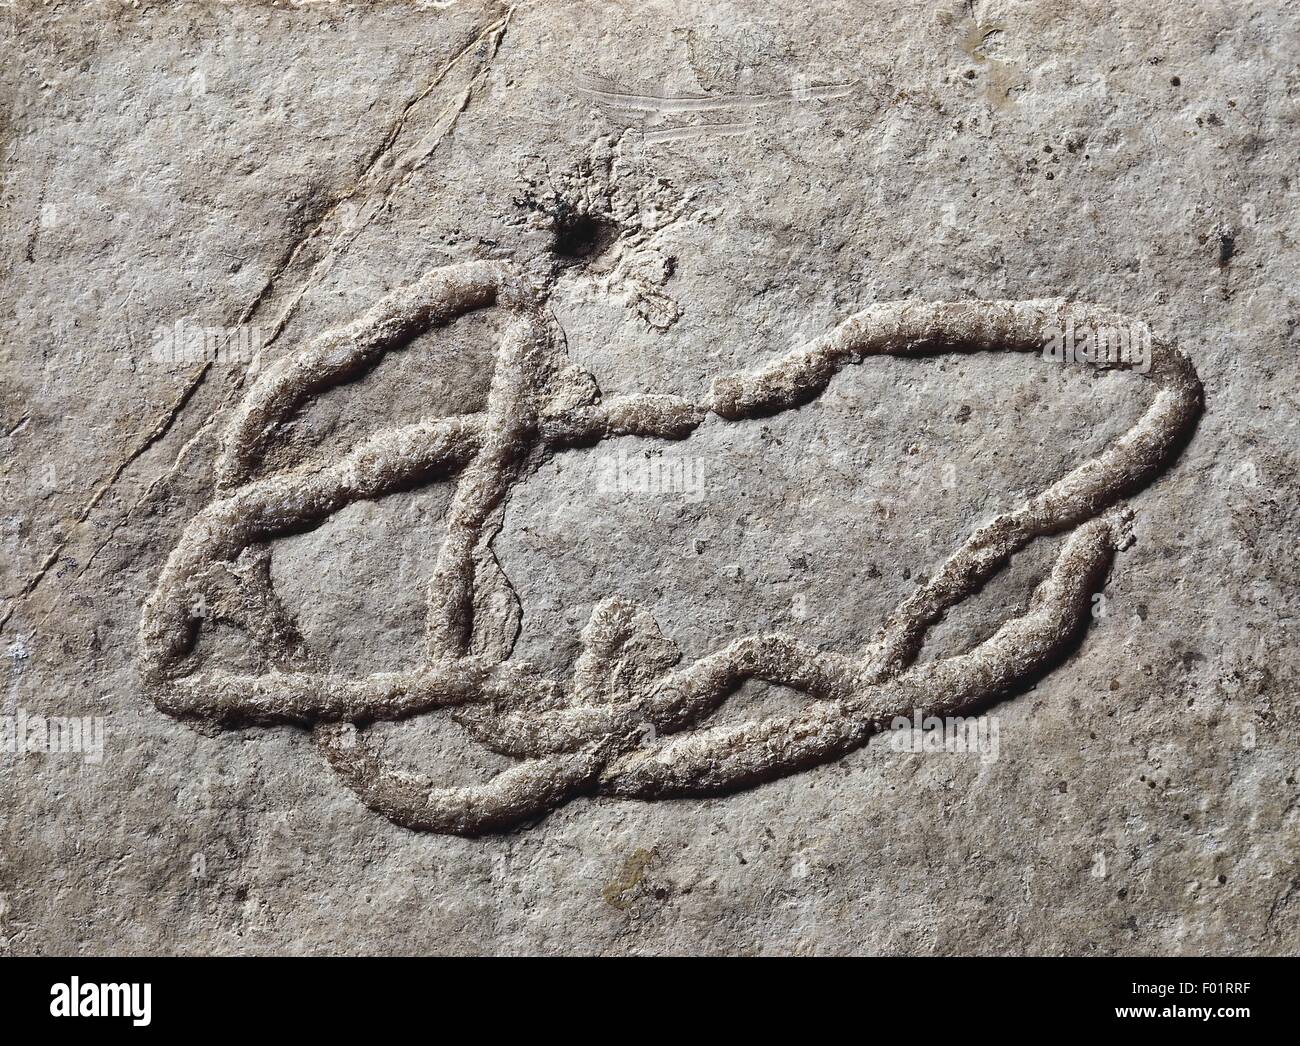 Fossils - Invertebrates. Marine worm form in Miocene rock, Oenigen, Switzerland Stock Photo